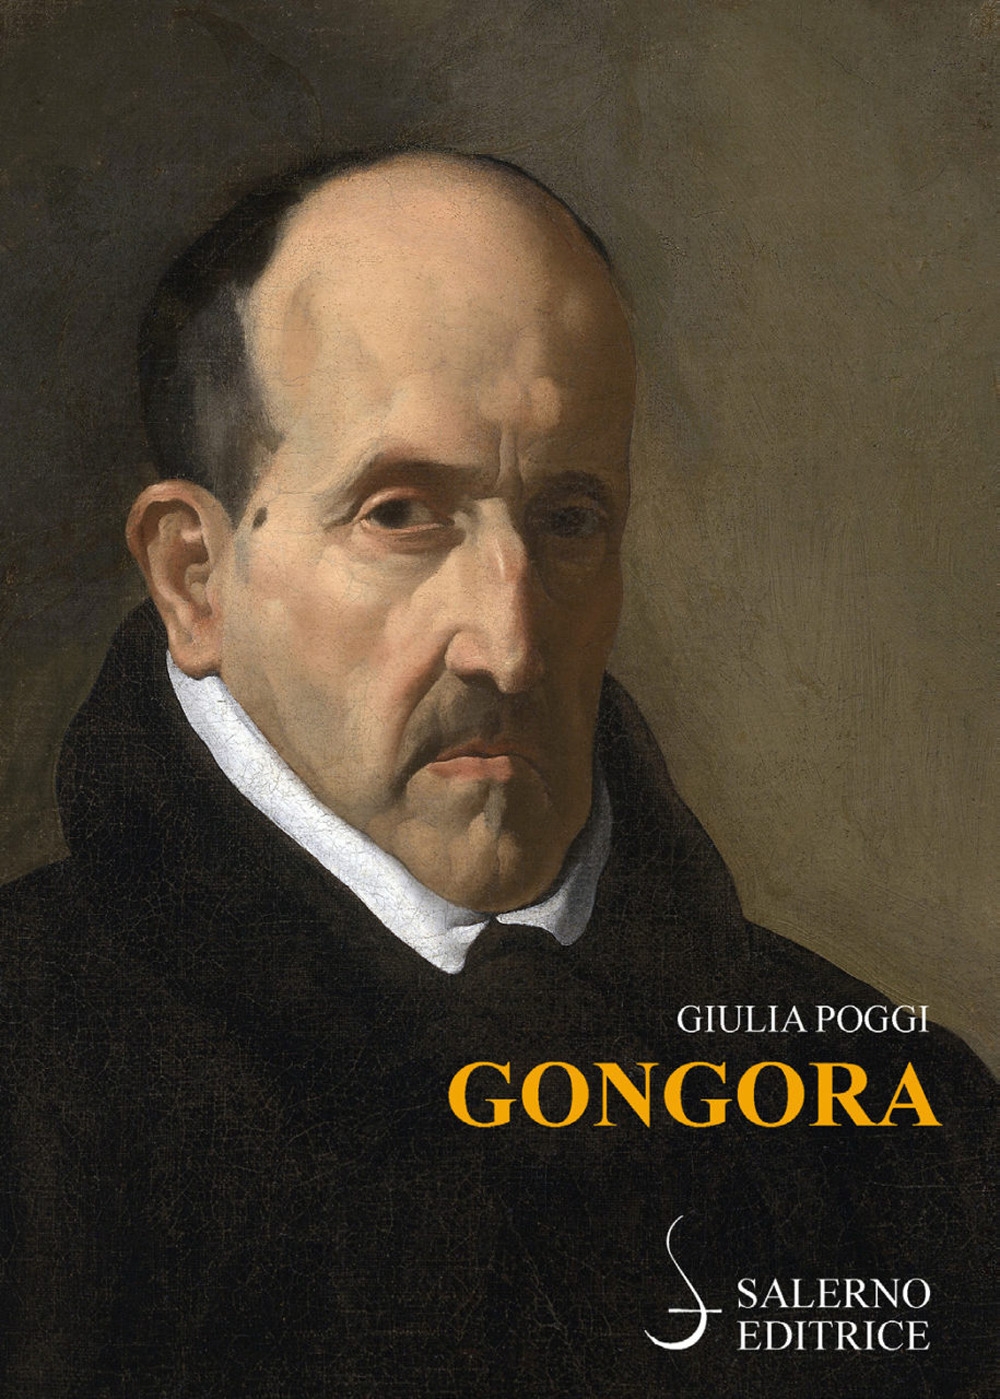 Libri Giulia Poggi - Gongora NUOVO SIGILLATO, EDIZIONE DEL 31/01/2019 SUBITO DISPONIBILE